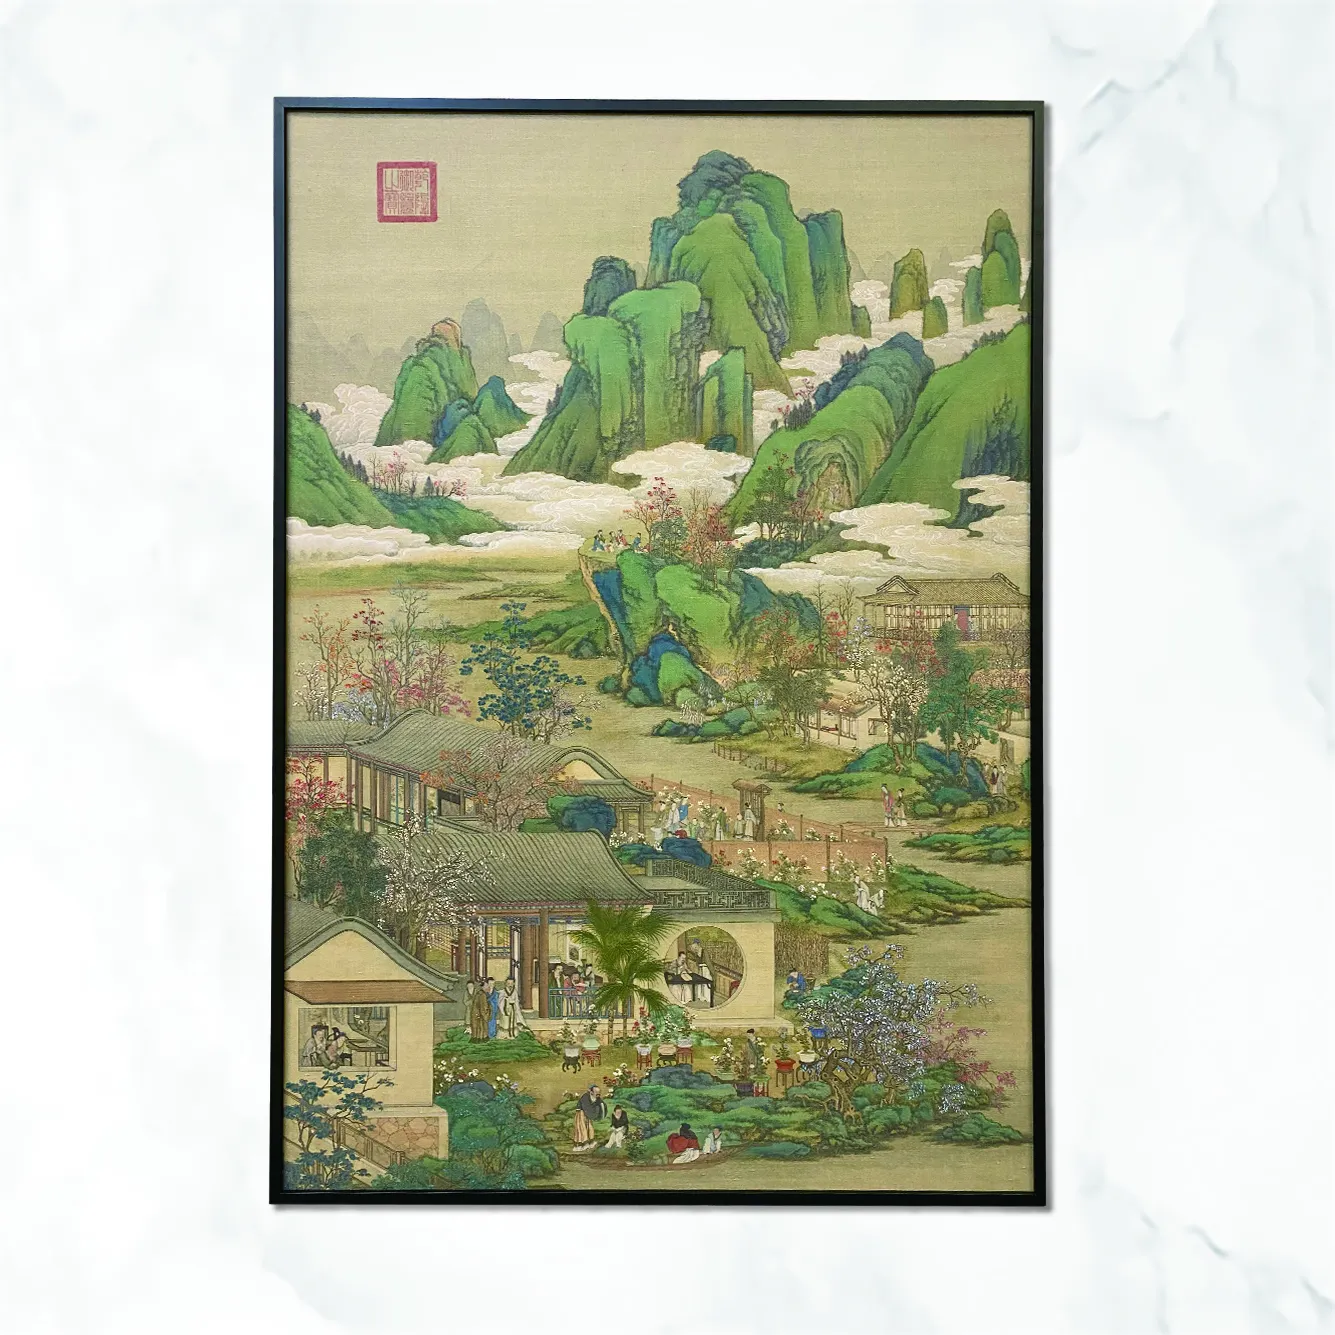 Lukisan bingkai reproduksi lukisan pemandangan pegunungan dan sungai lukisan seni dekoratif rumah tradisional Tiongkok